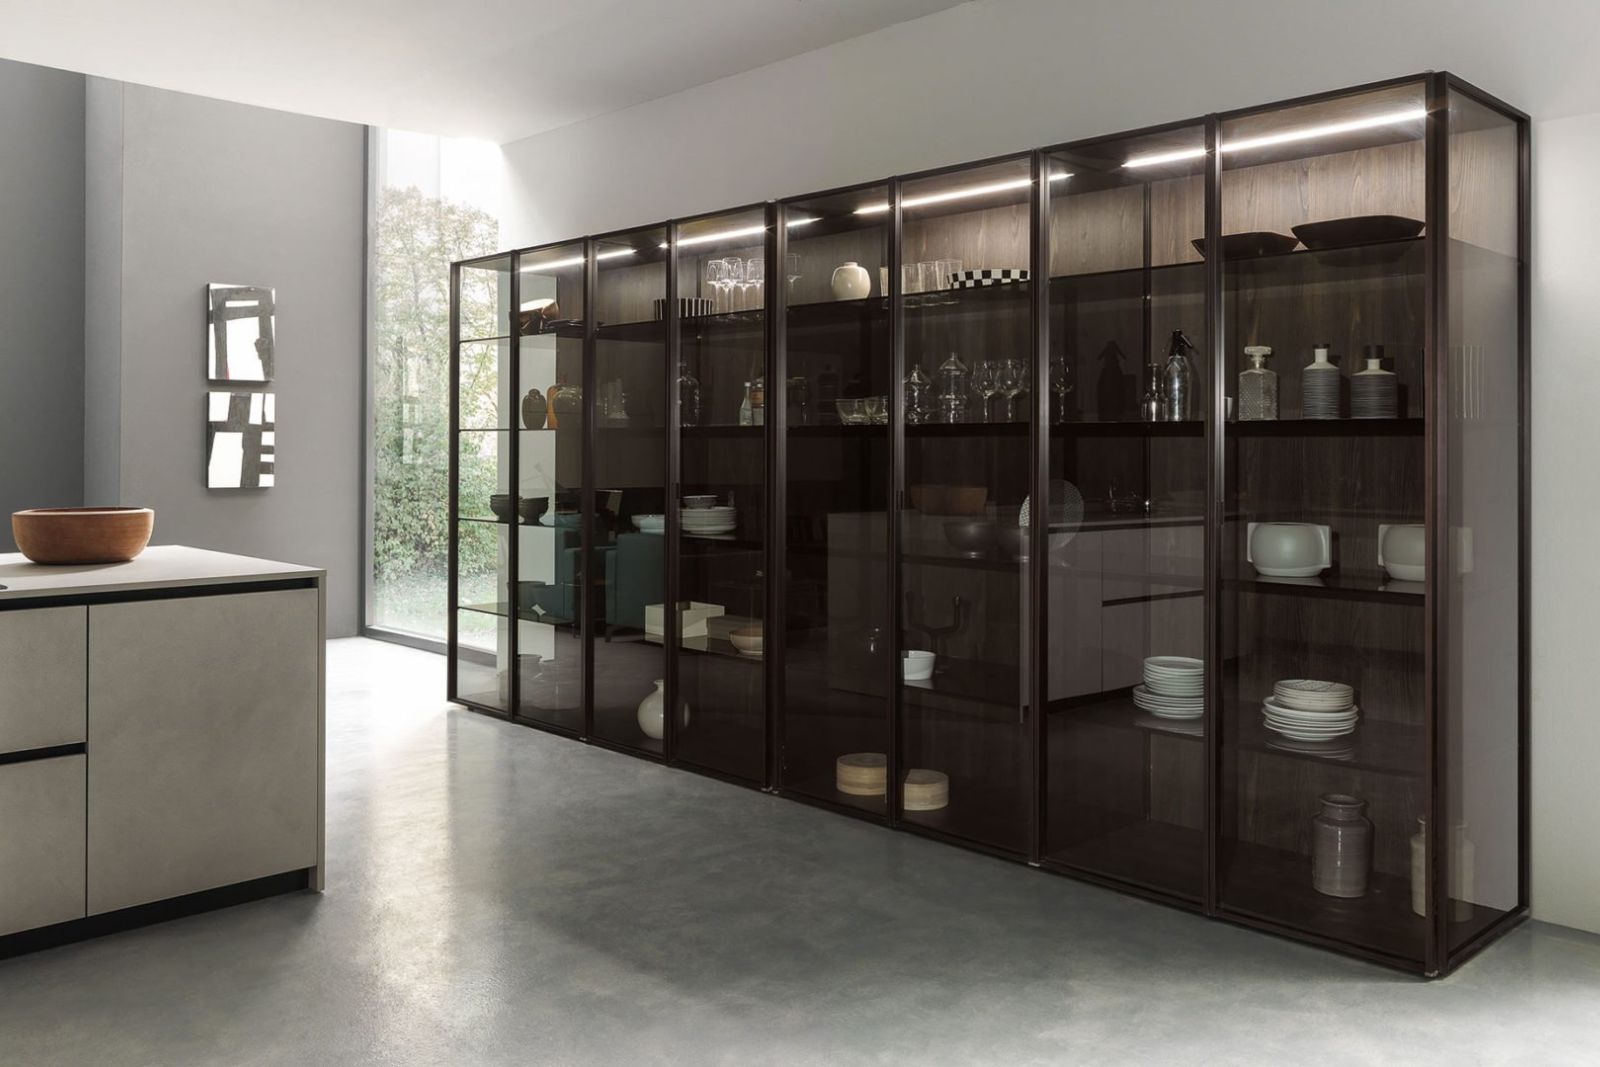 Kitchen luxury cabinet